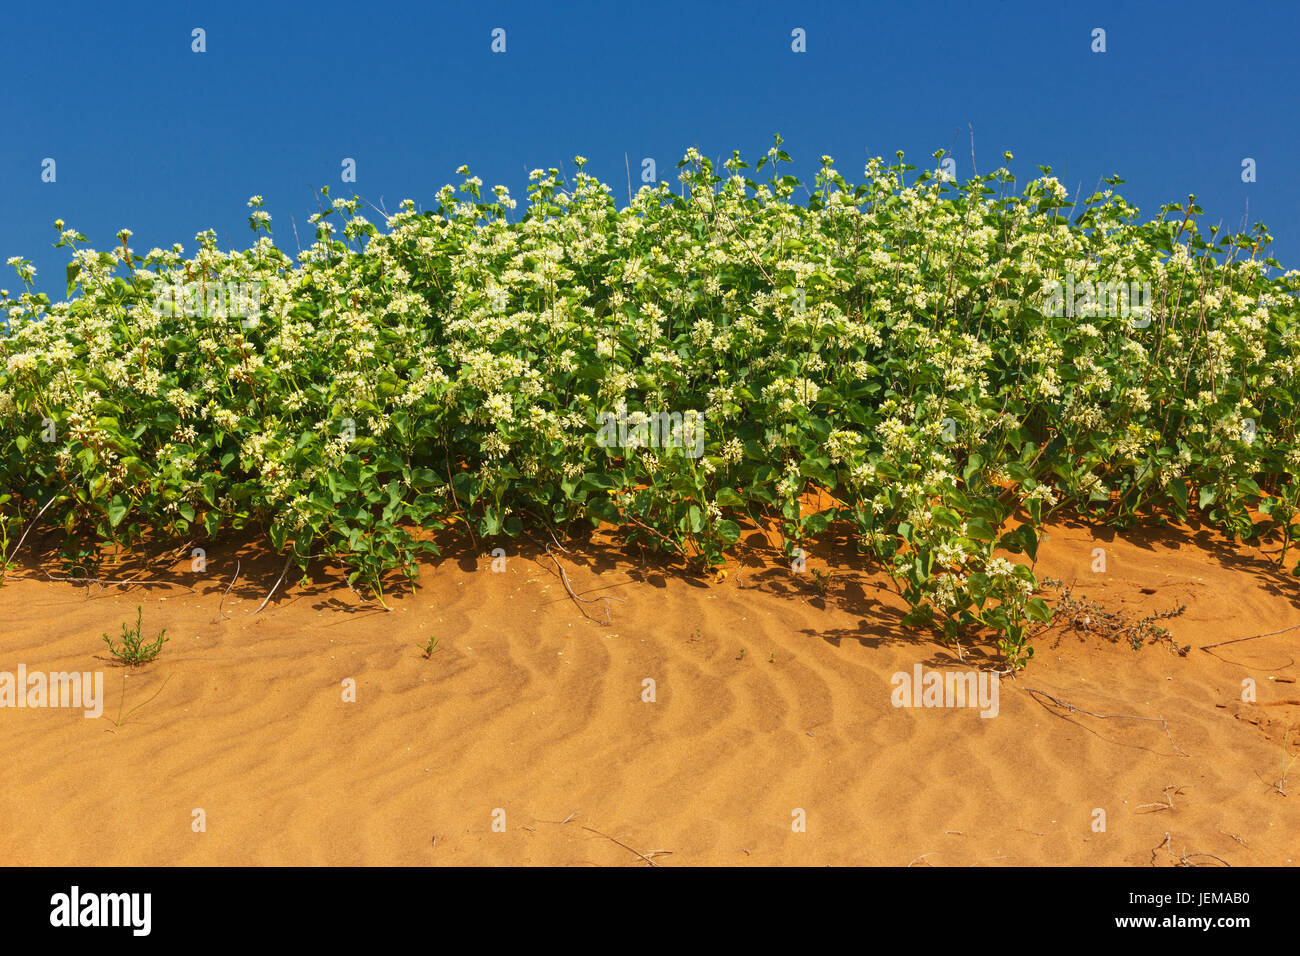 am Meer Sand Dune Blumen und Pflanzen Stockfotografie - Alamy